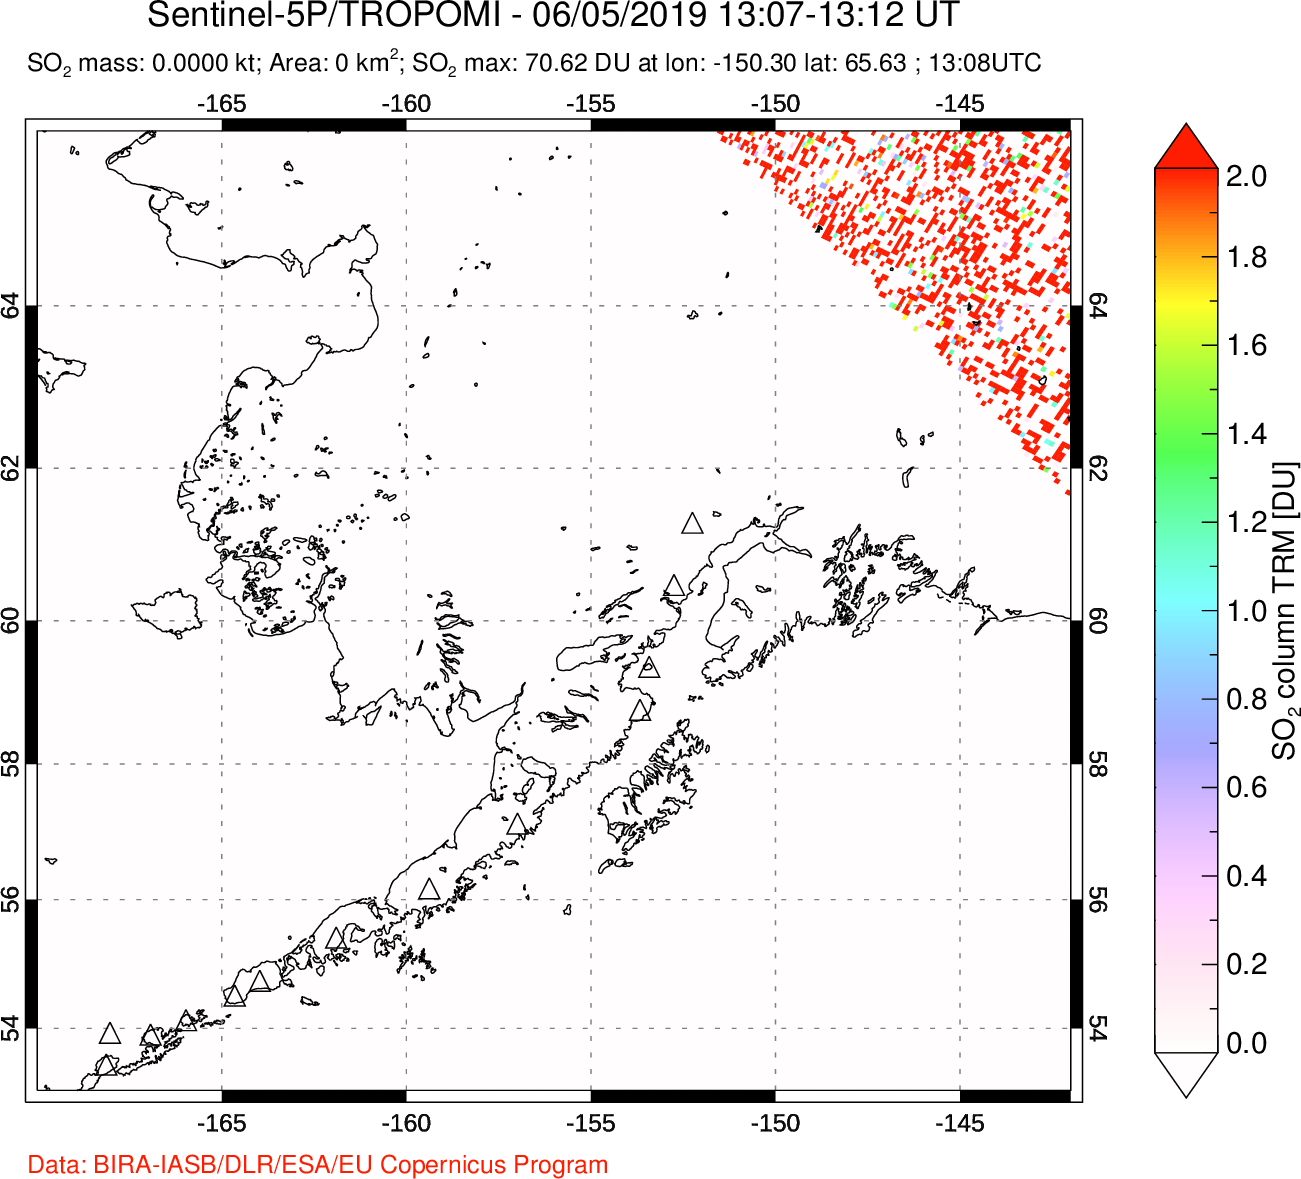 A sulfur dioxide image over Alaska, USA on Jun 05, 2019.